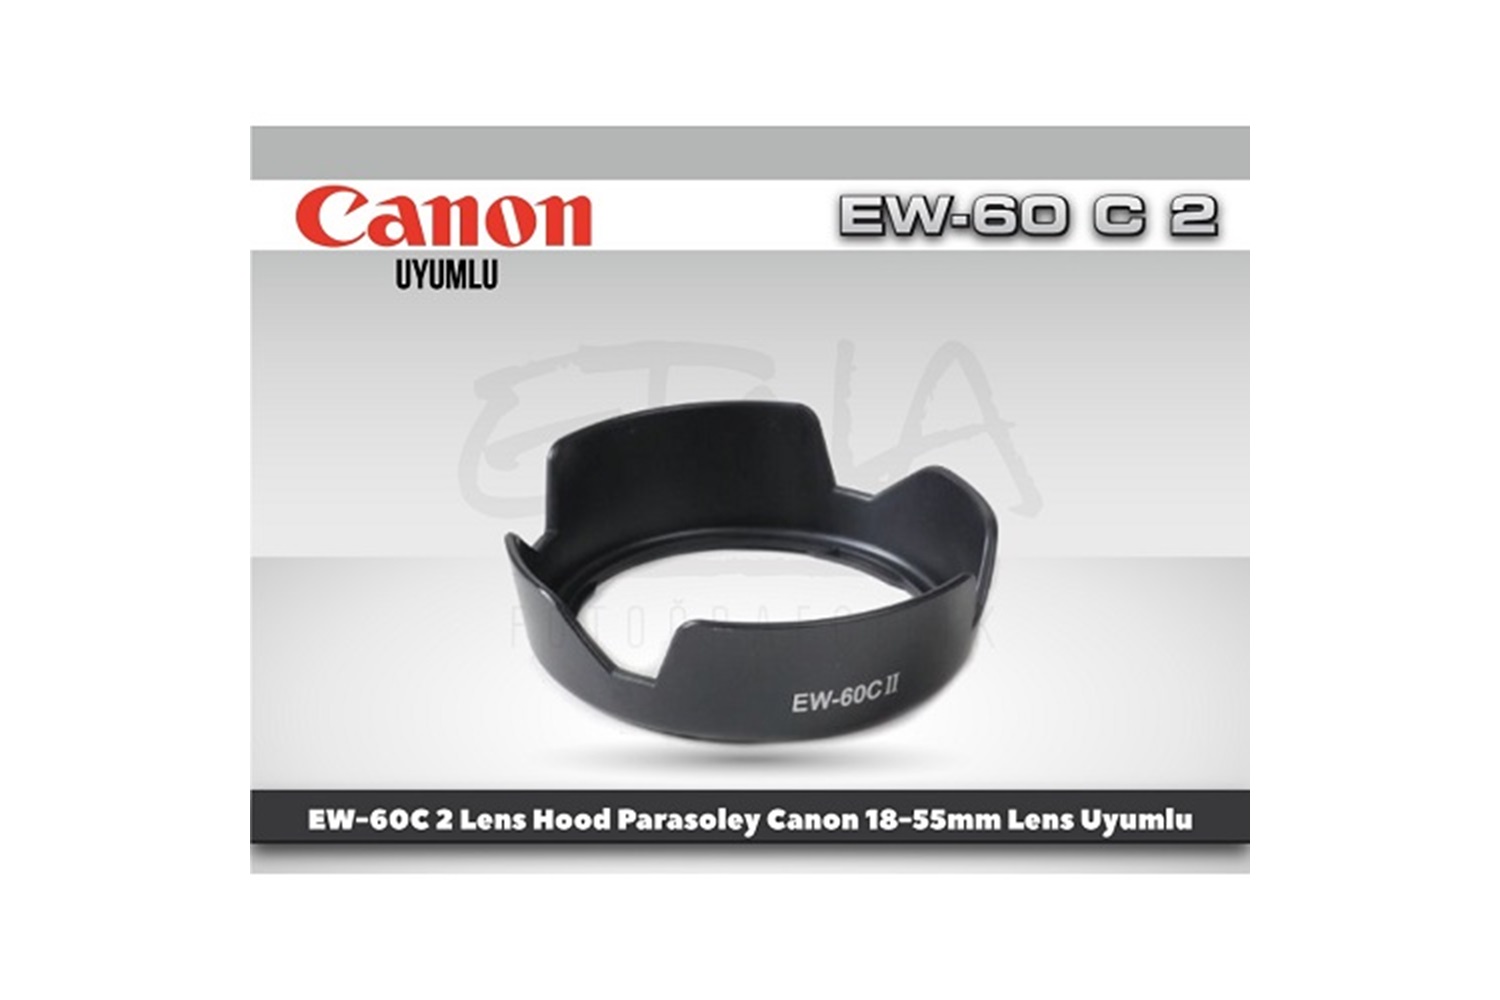 Tewise Canon EW-60C II Parasoley EF-S 18-55mm Lens Uyumlu